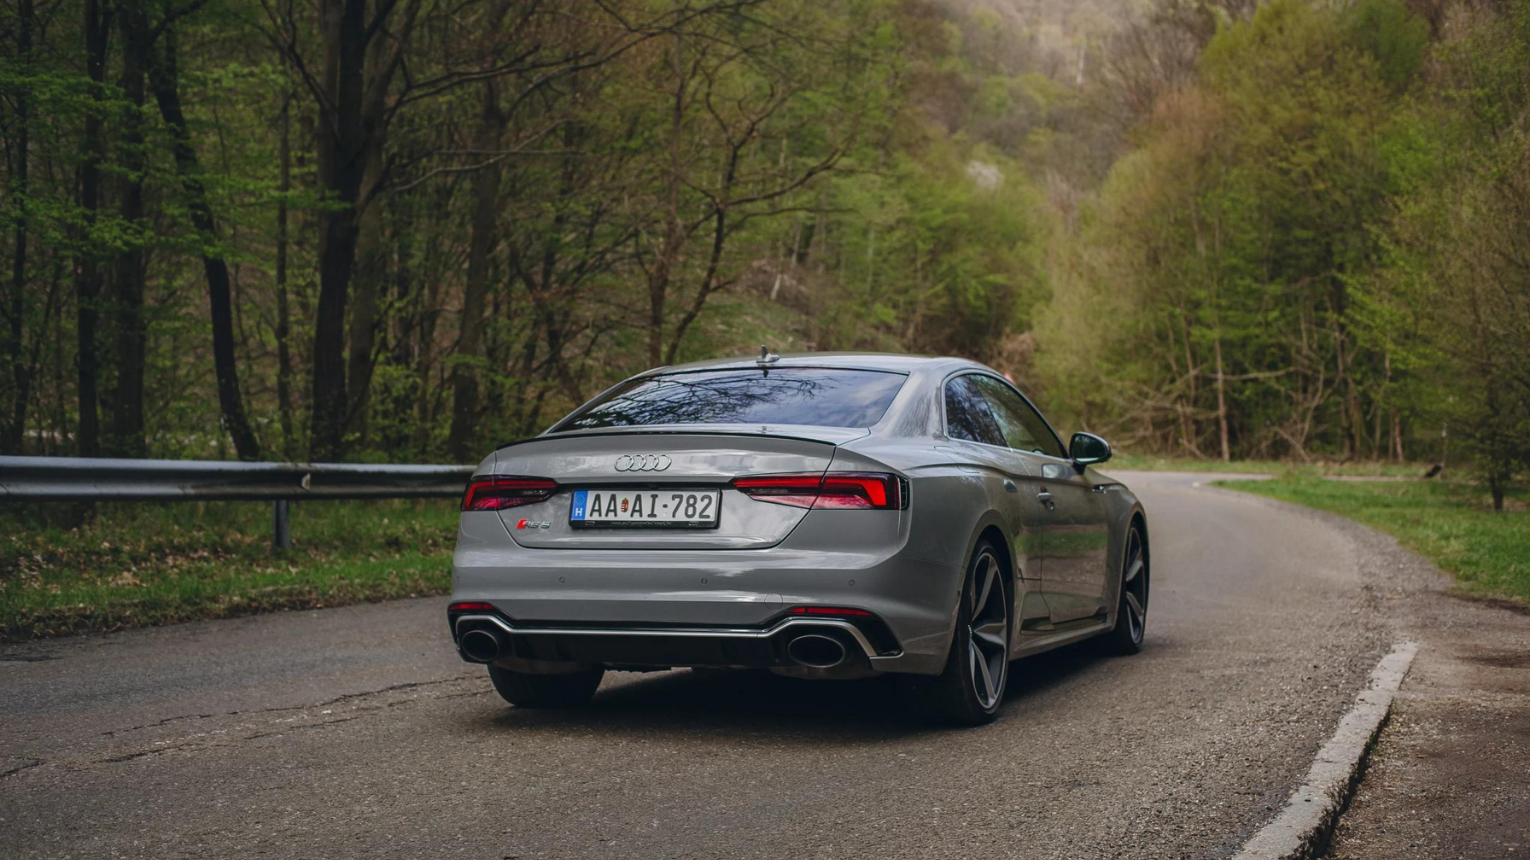 Utcai élményvezetés egy igazi némettel! Egy Audi RS 5-sel 3